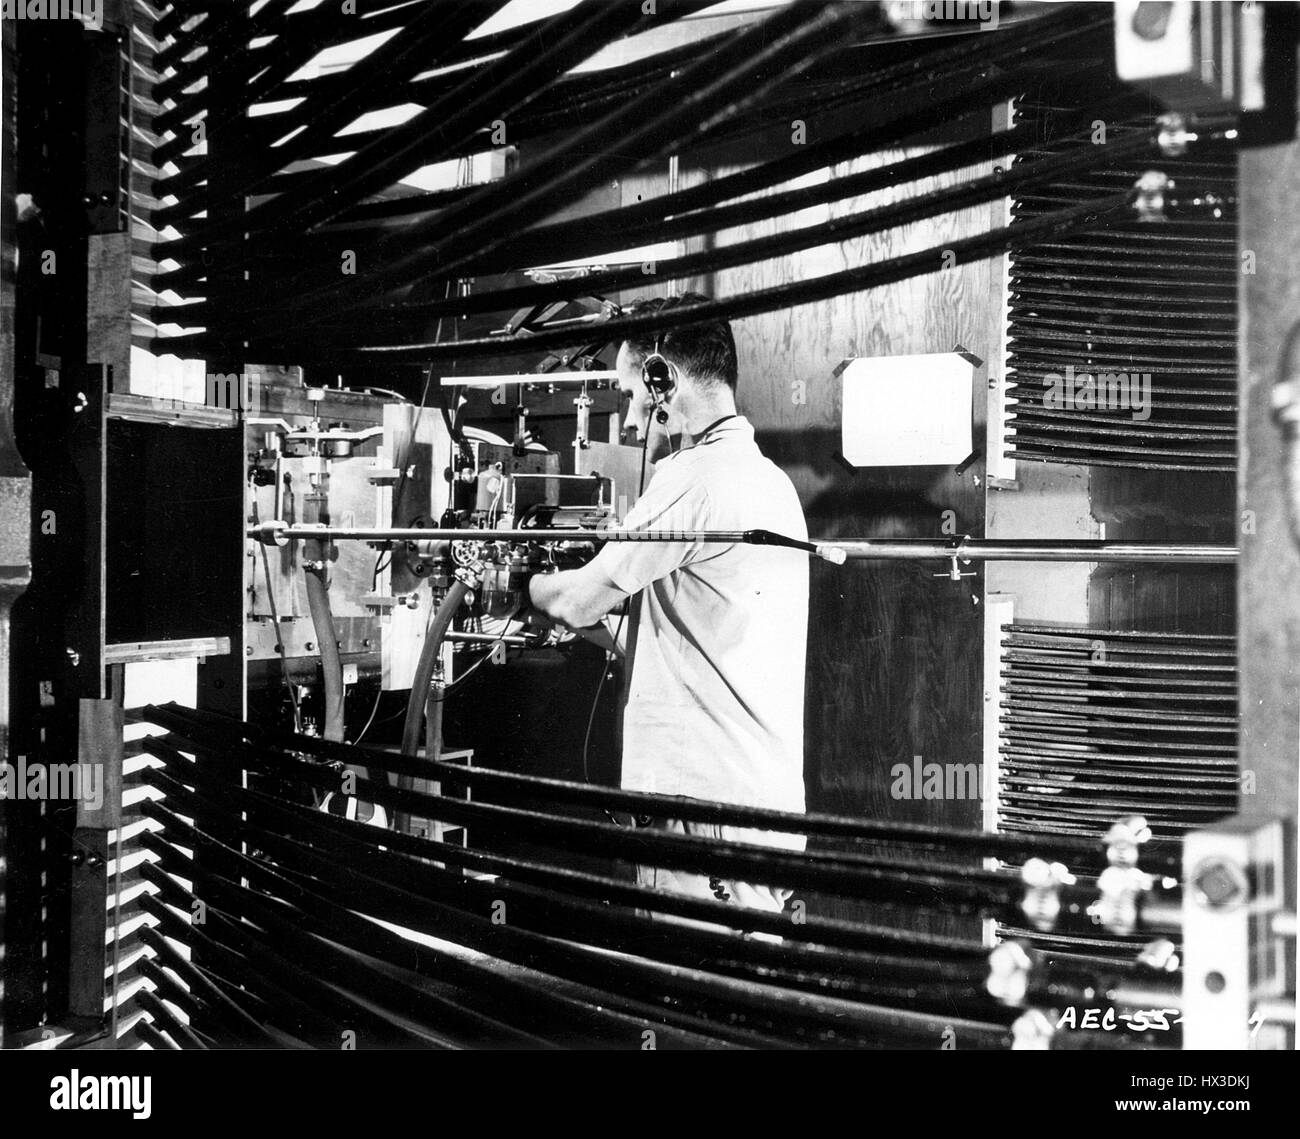 Obiettivi per essere bombardati sono inseriti nel fascio di protoni di Brookhaven Cosmotron mediante aria di look, Upton, New York, 1950. Immagine cortesia del Dipartimento Americano di Energia. Foto Stock